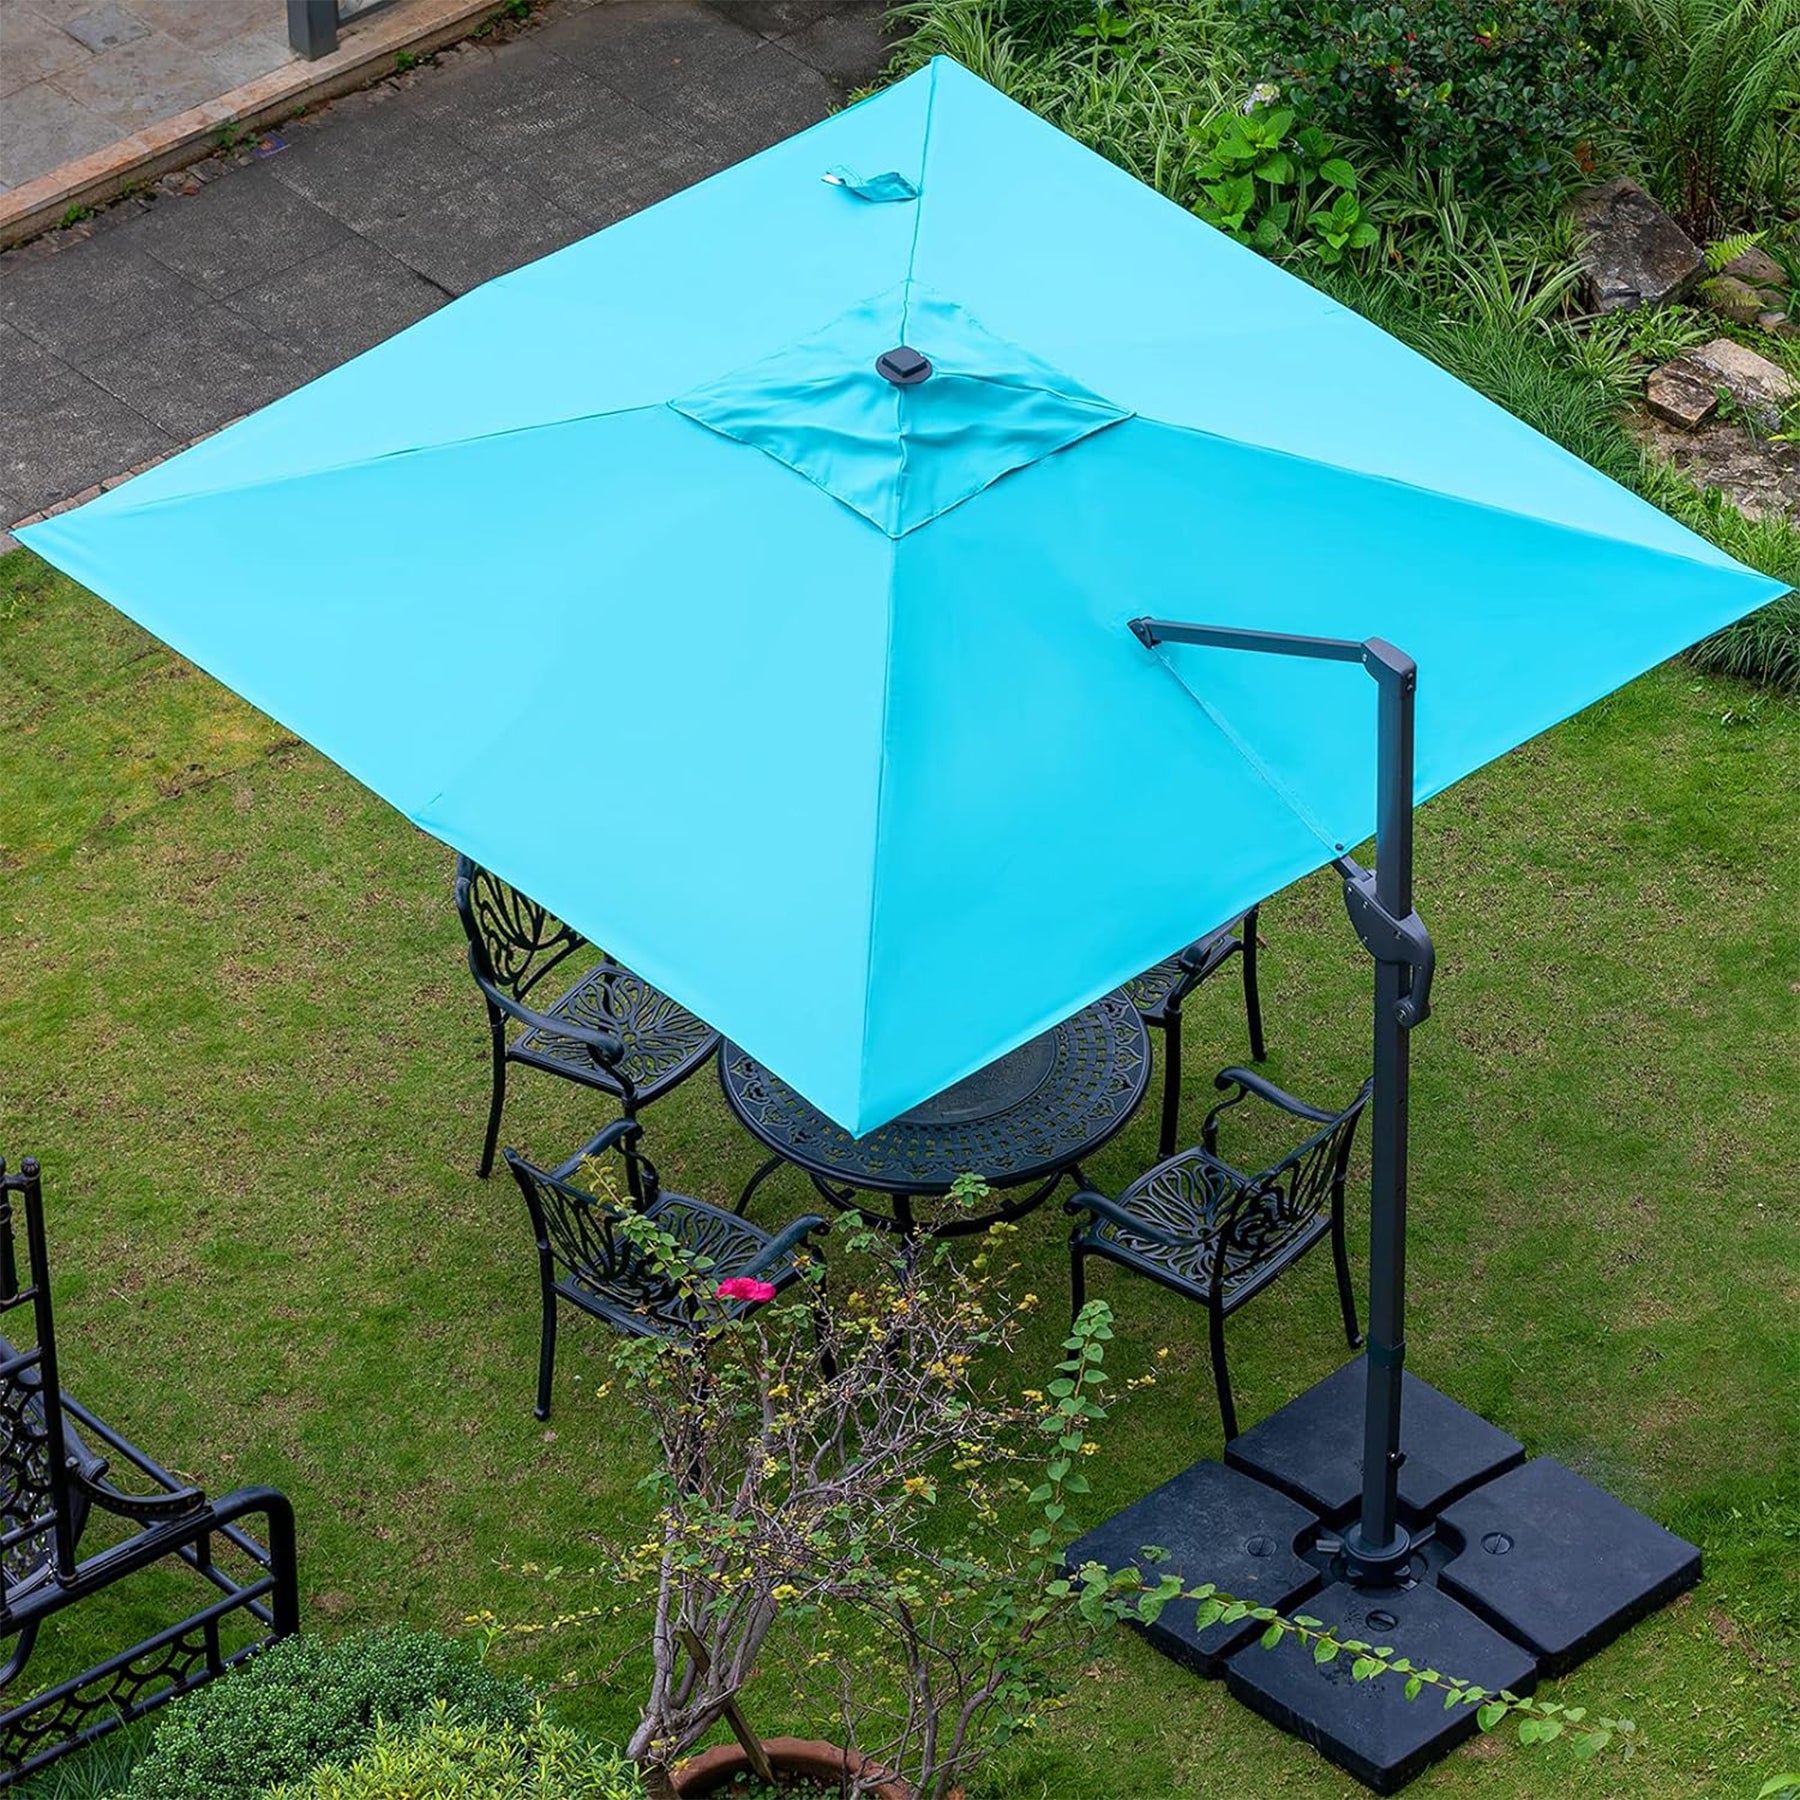 Aluminum umbrella